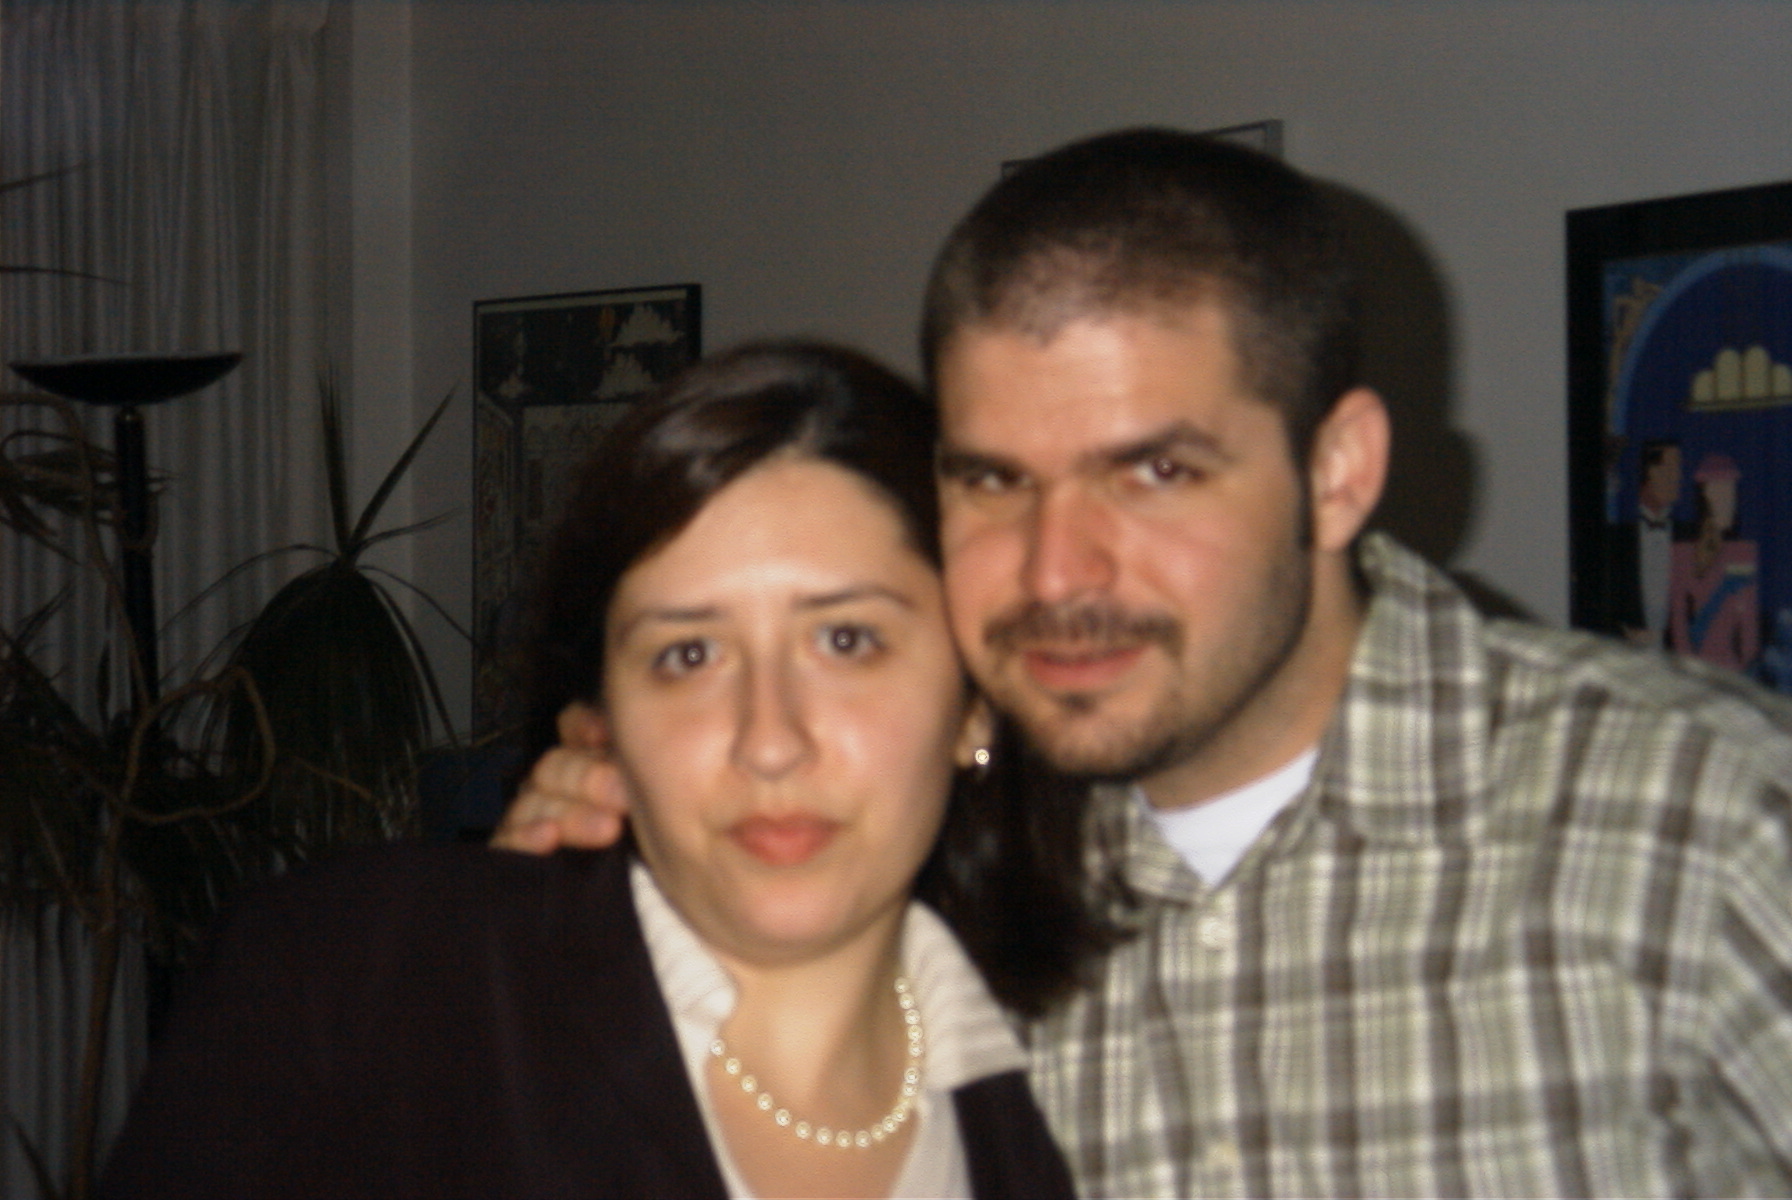 Celio and wife